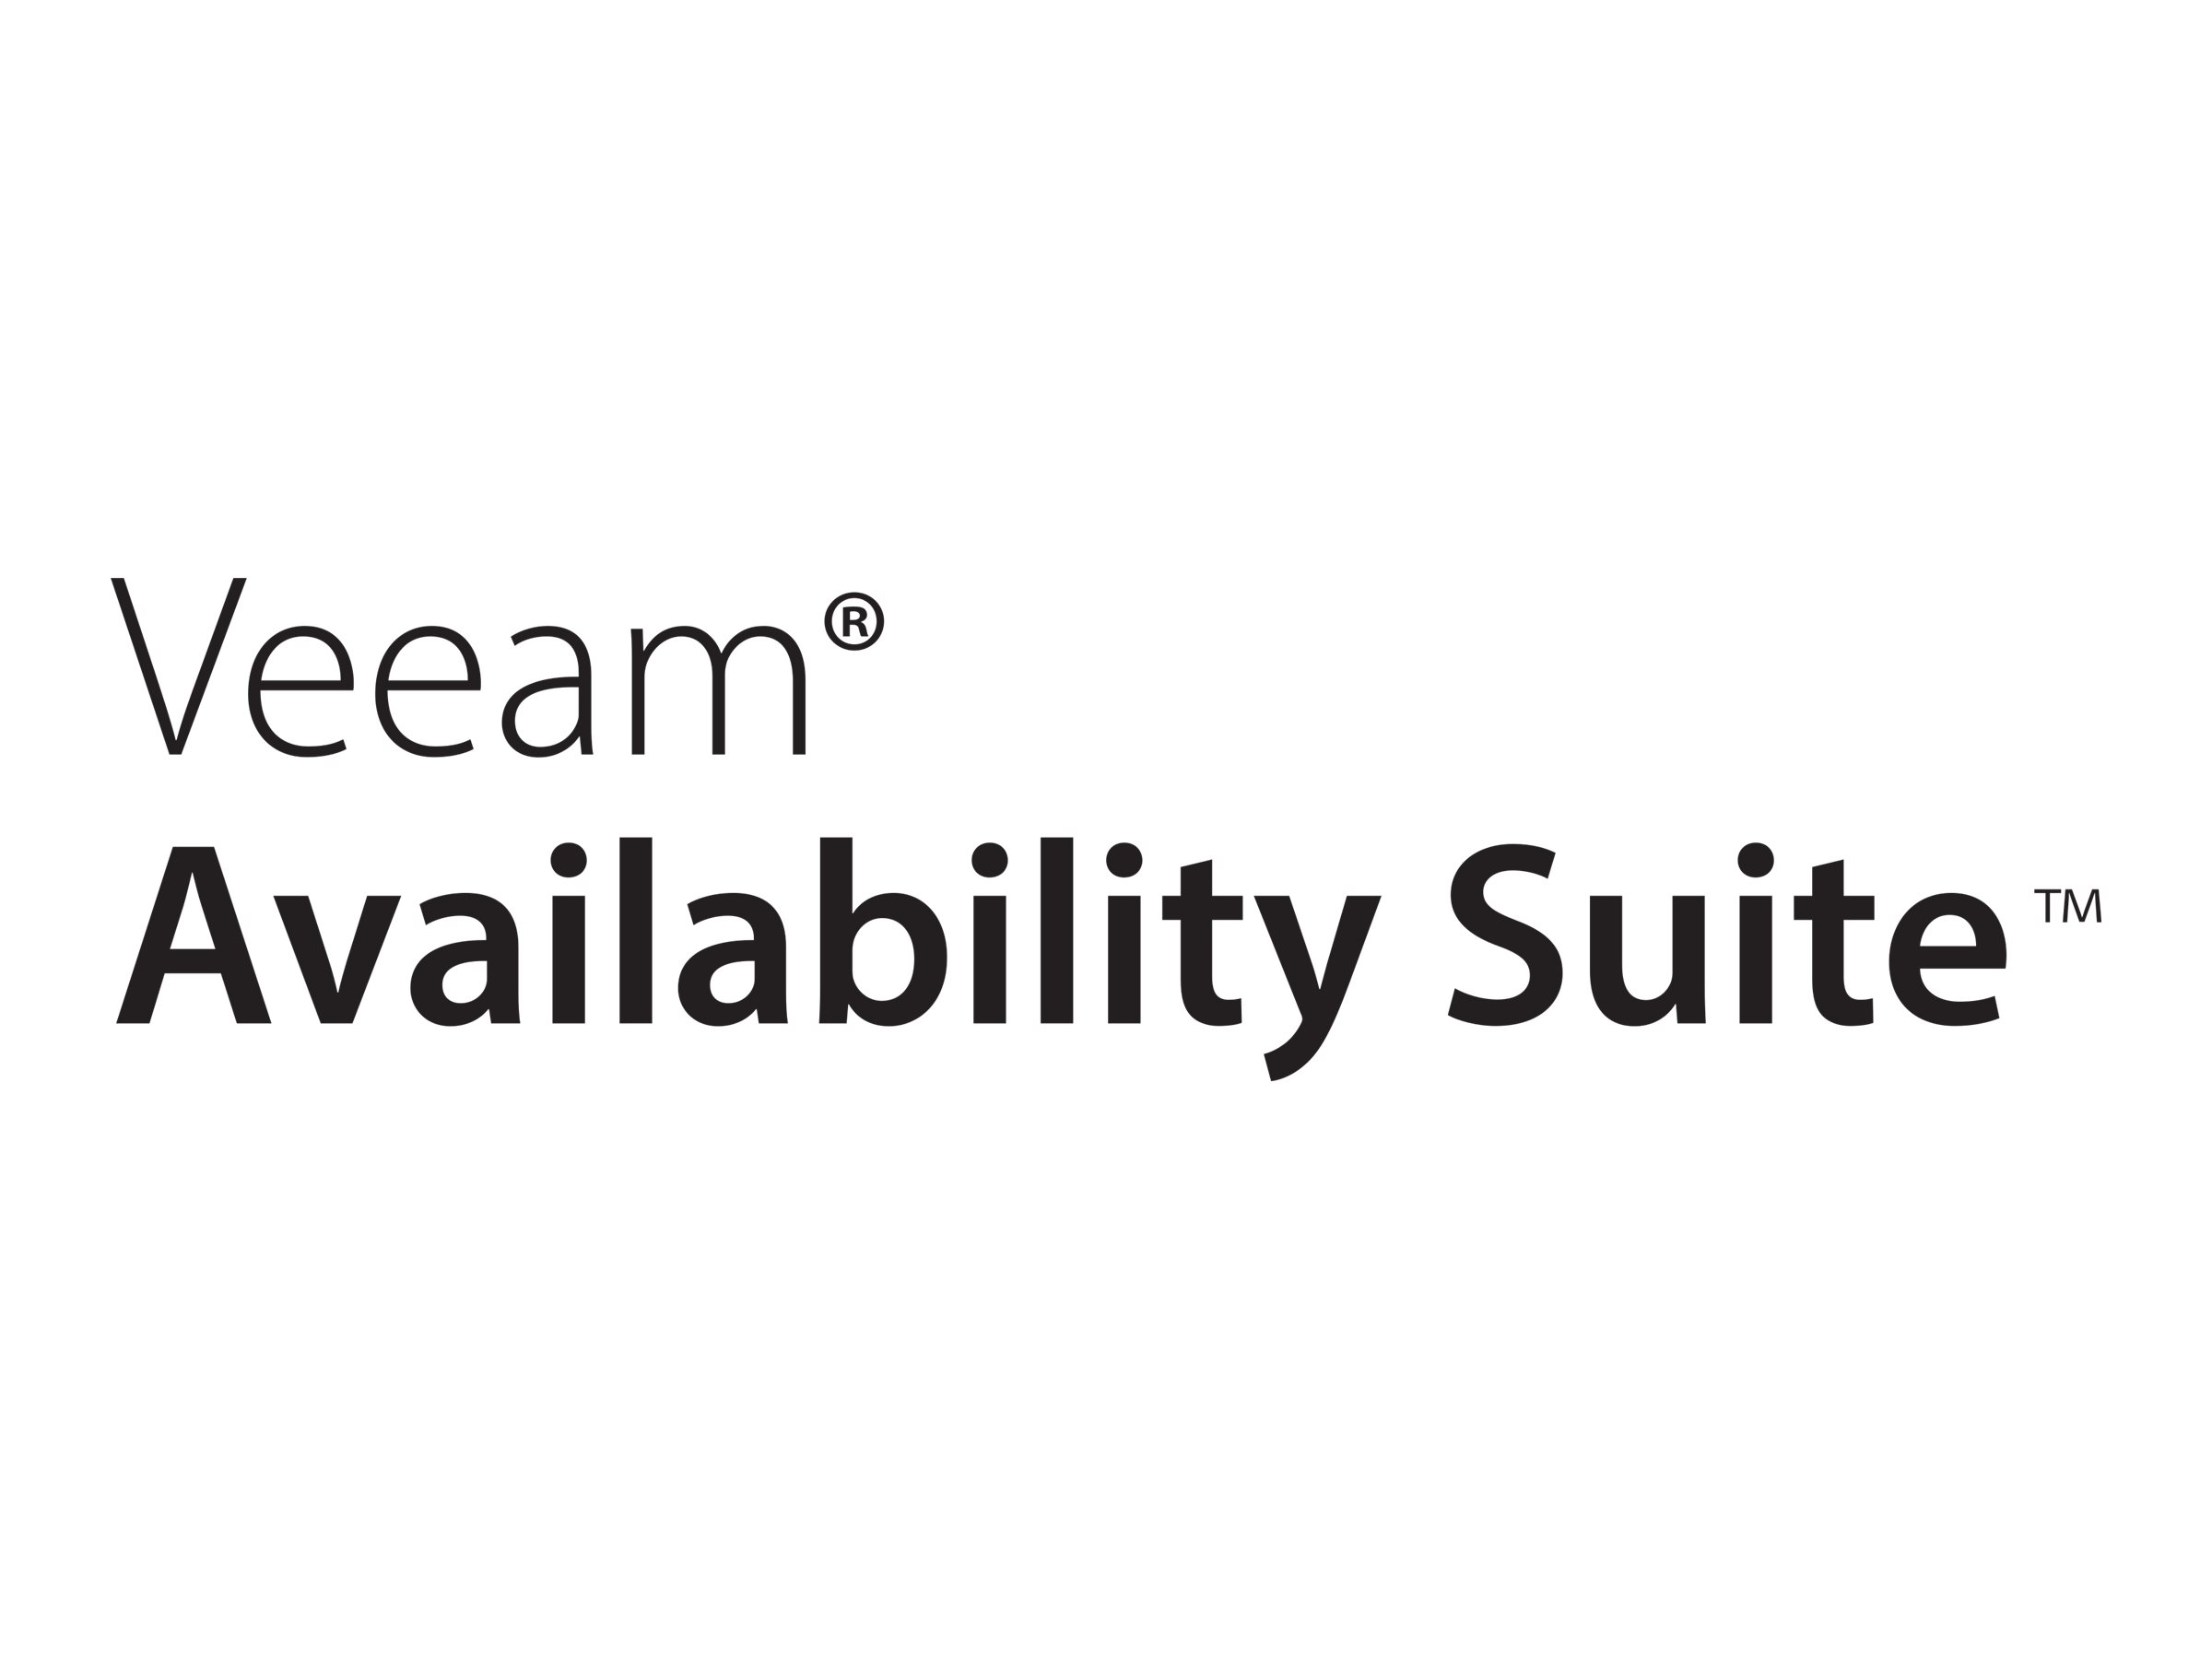 Veeam Availability Suite Universal License - Upfront Billing-Lizenz (Erneuerung) (5 Jahre) + Production Support - 10 Instanzen - enthält Funktionen der Enterprise Plus Edition